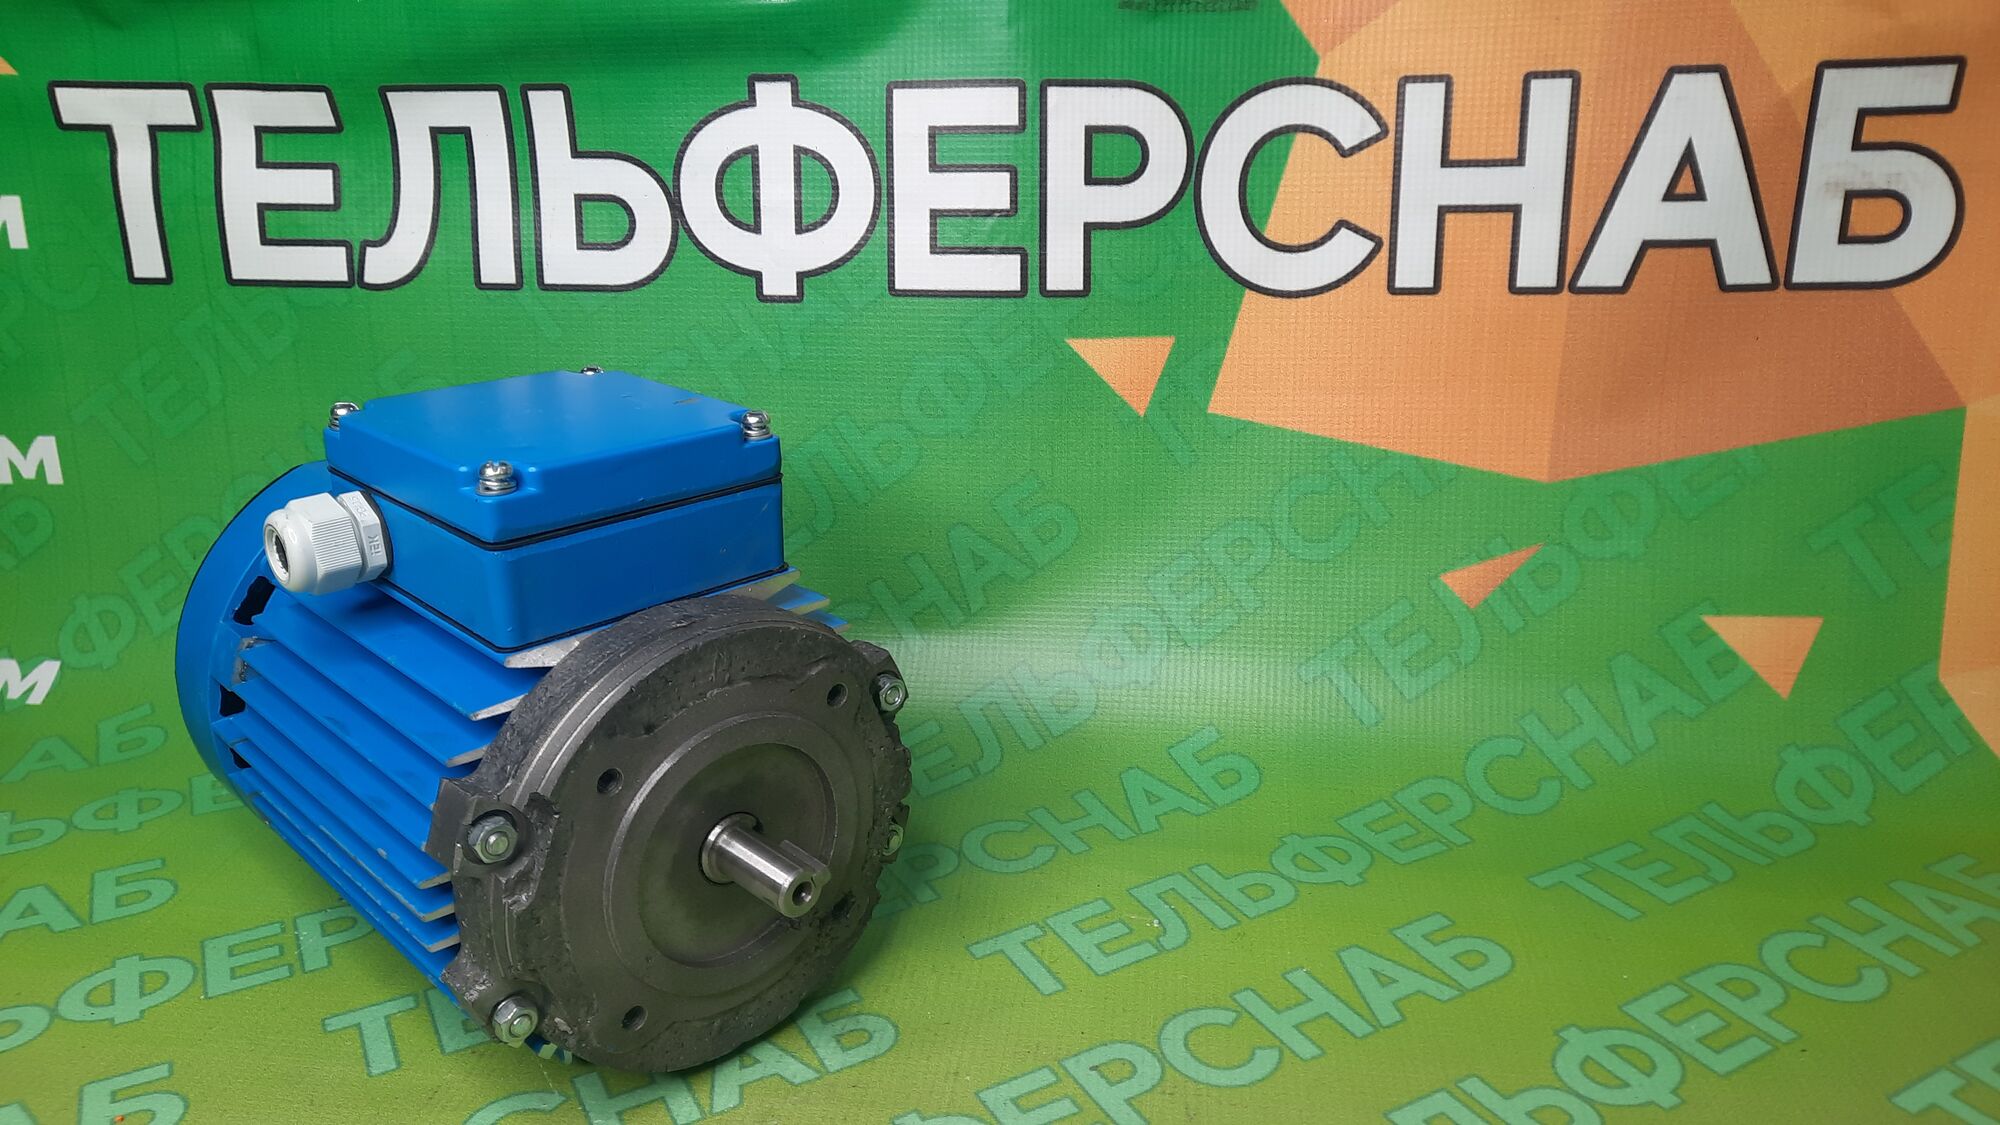 Электродвигатель без тормоза АДС71O4TУ2 0.37 кВт 1300 об/мин, 380 В IM3081 фланец 110 мм для тельфера, Россия